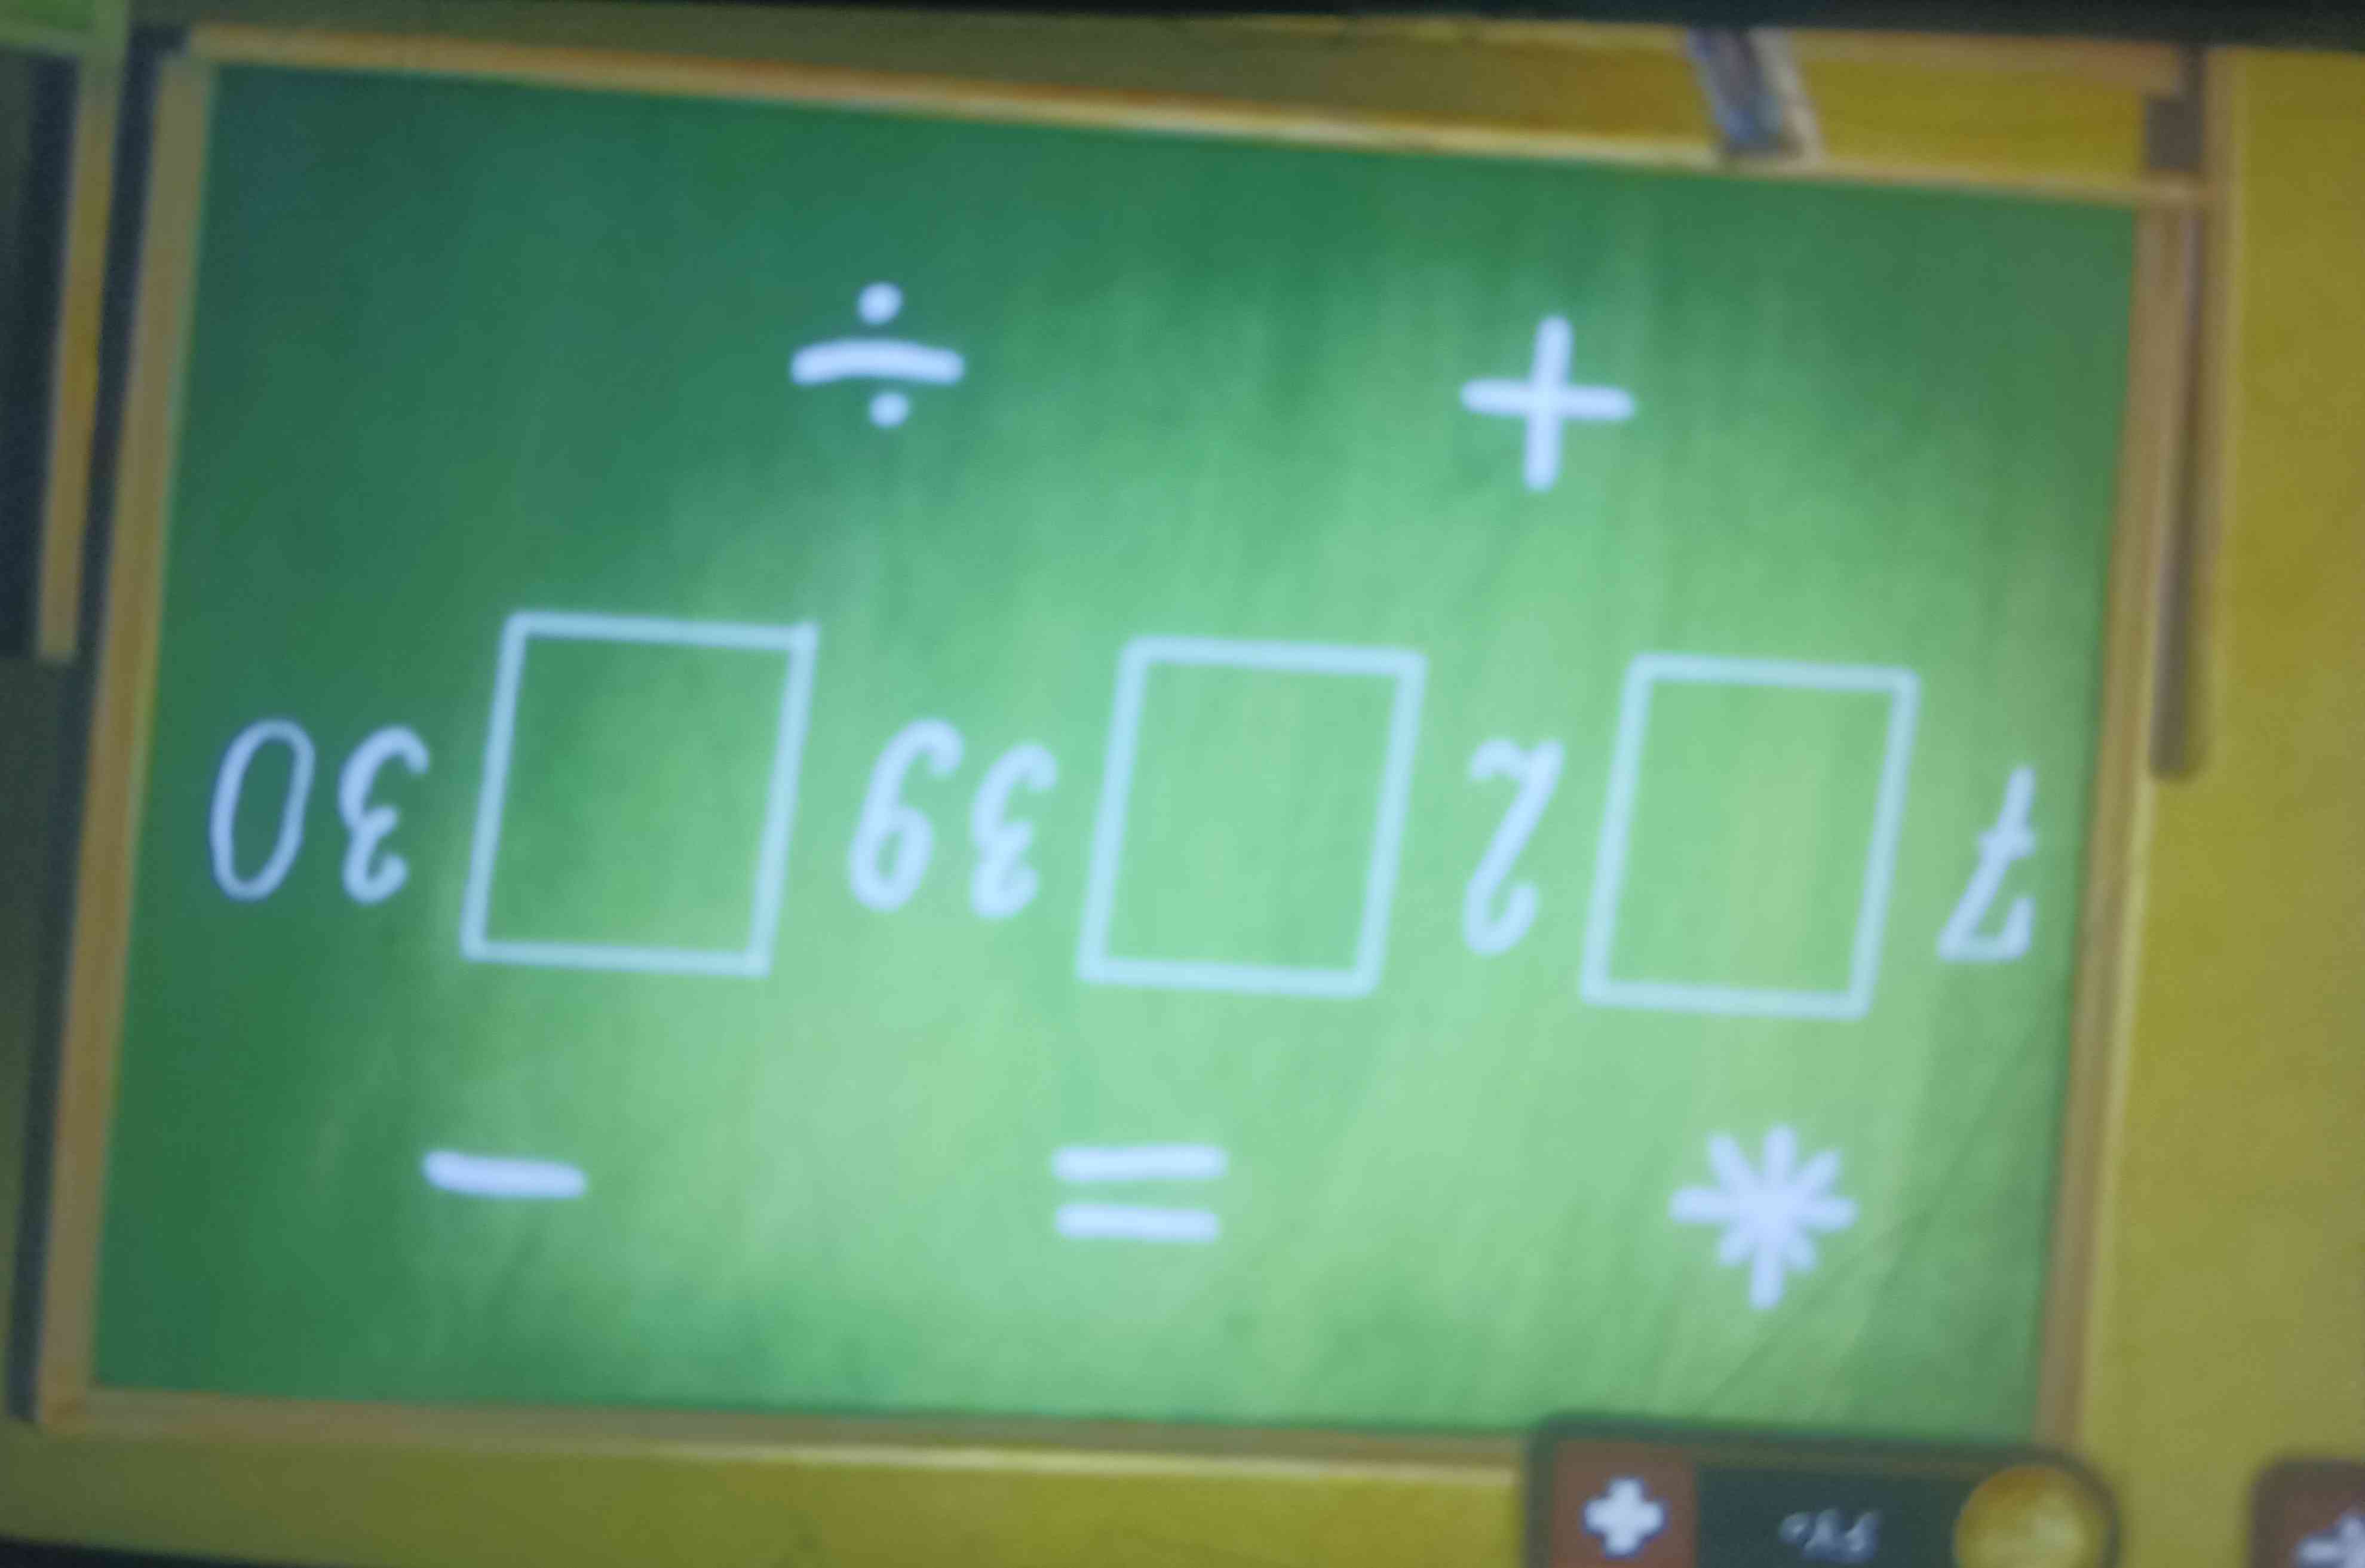 بچه‌ها میتونین این معادله رو حل کنید 😂